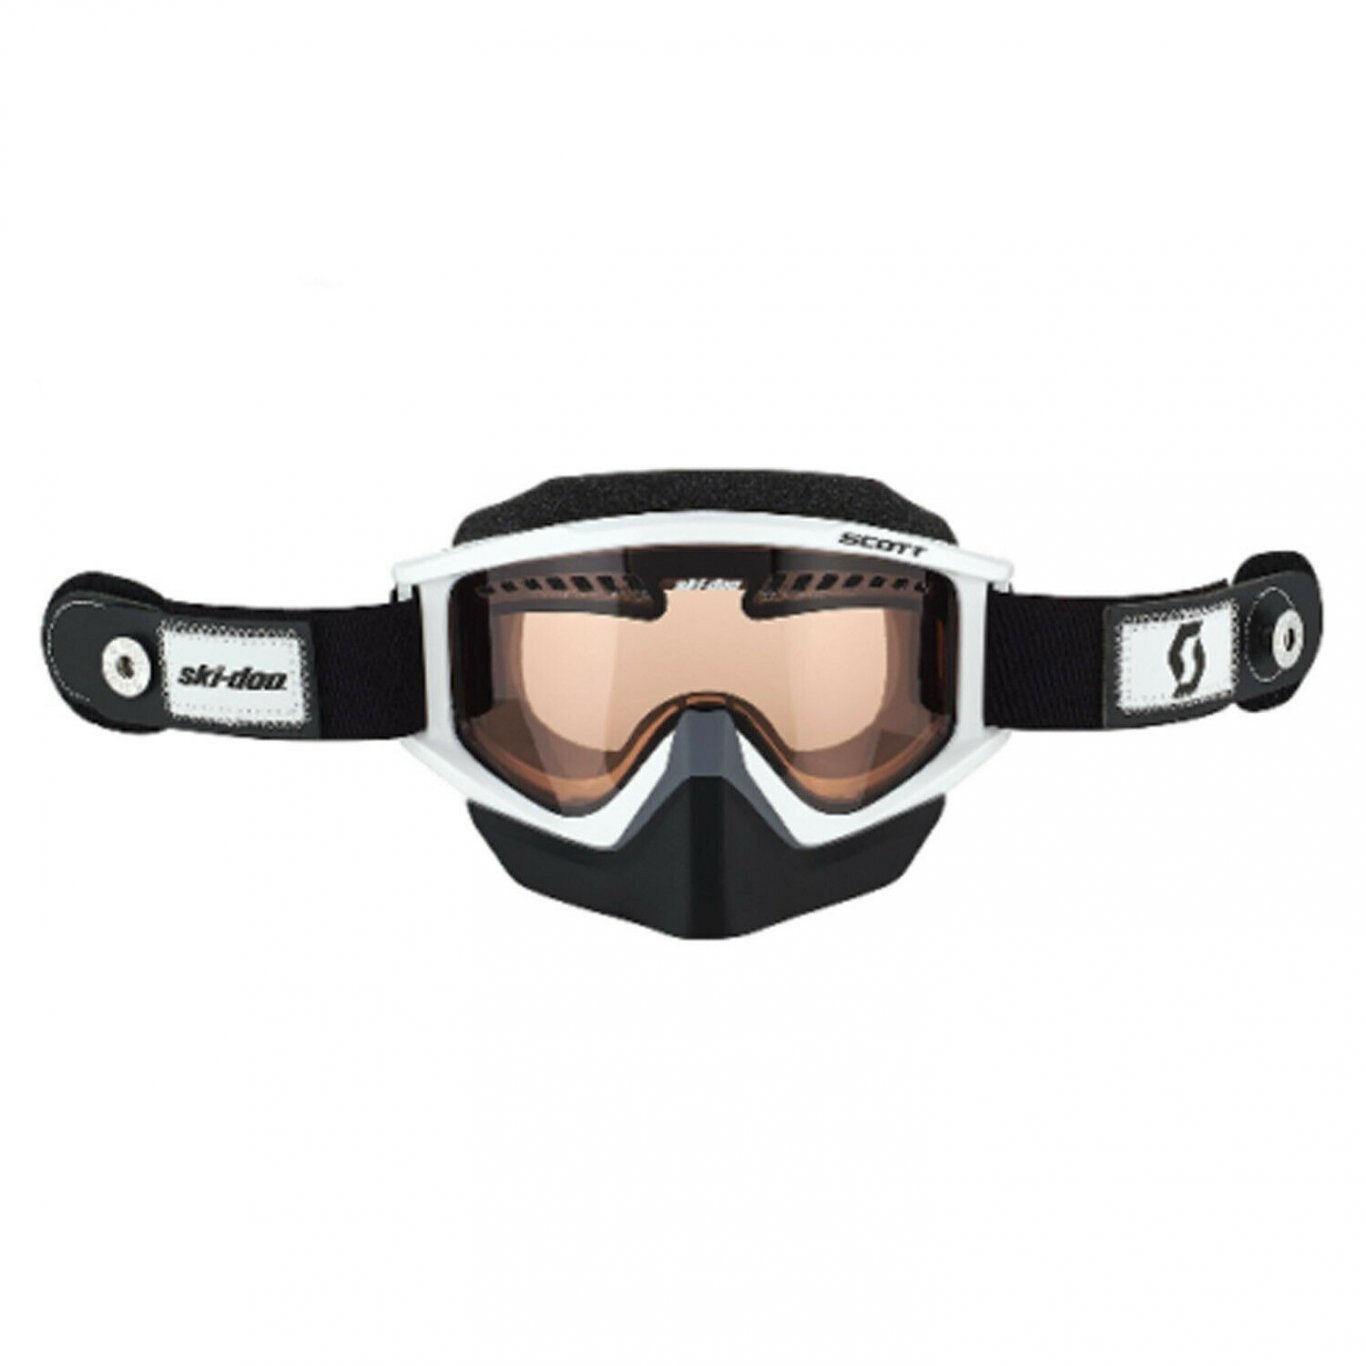 Ski Doo Holeshot Speed Strap Goggles By Scott White